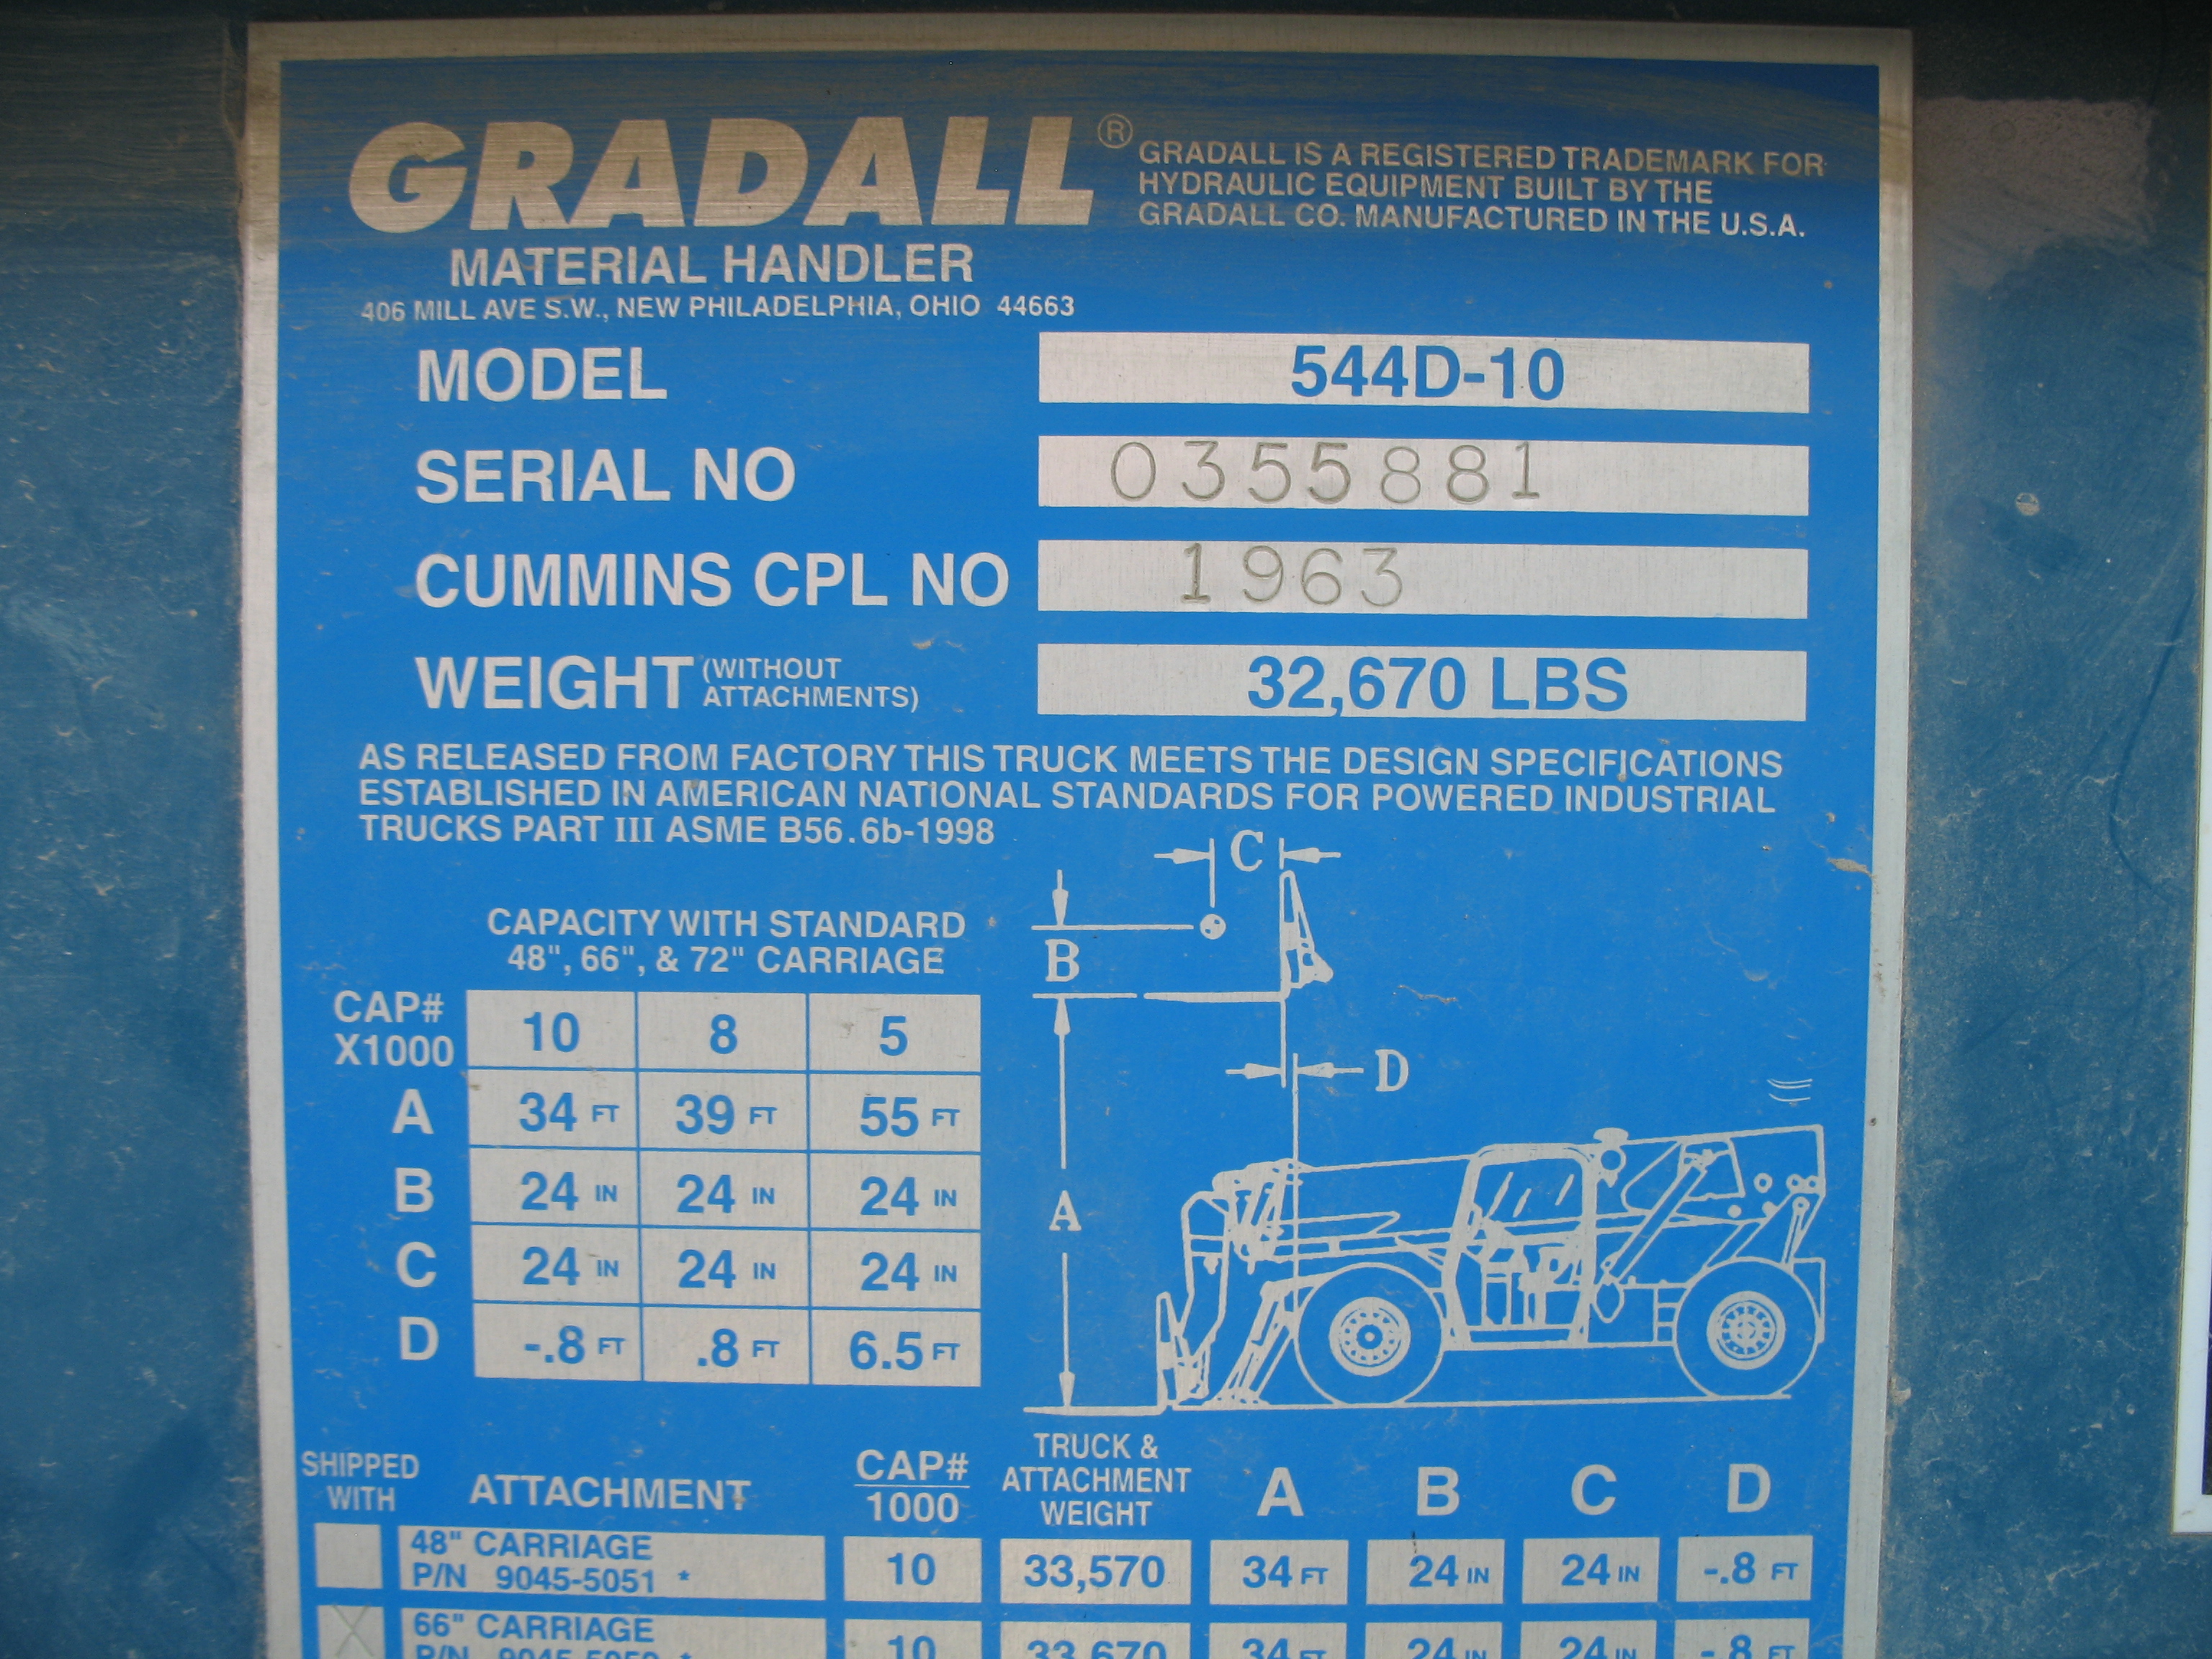 2001 Gradall 544D-10 (#0355881)